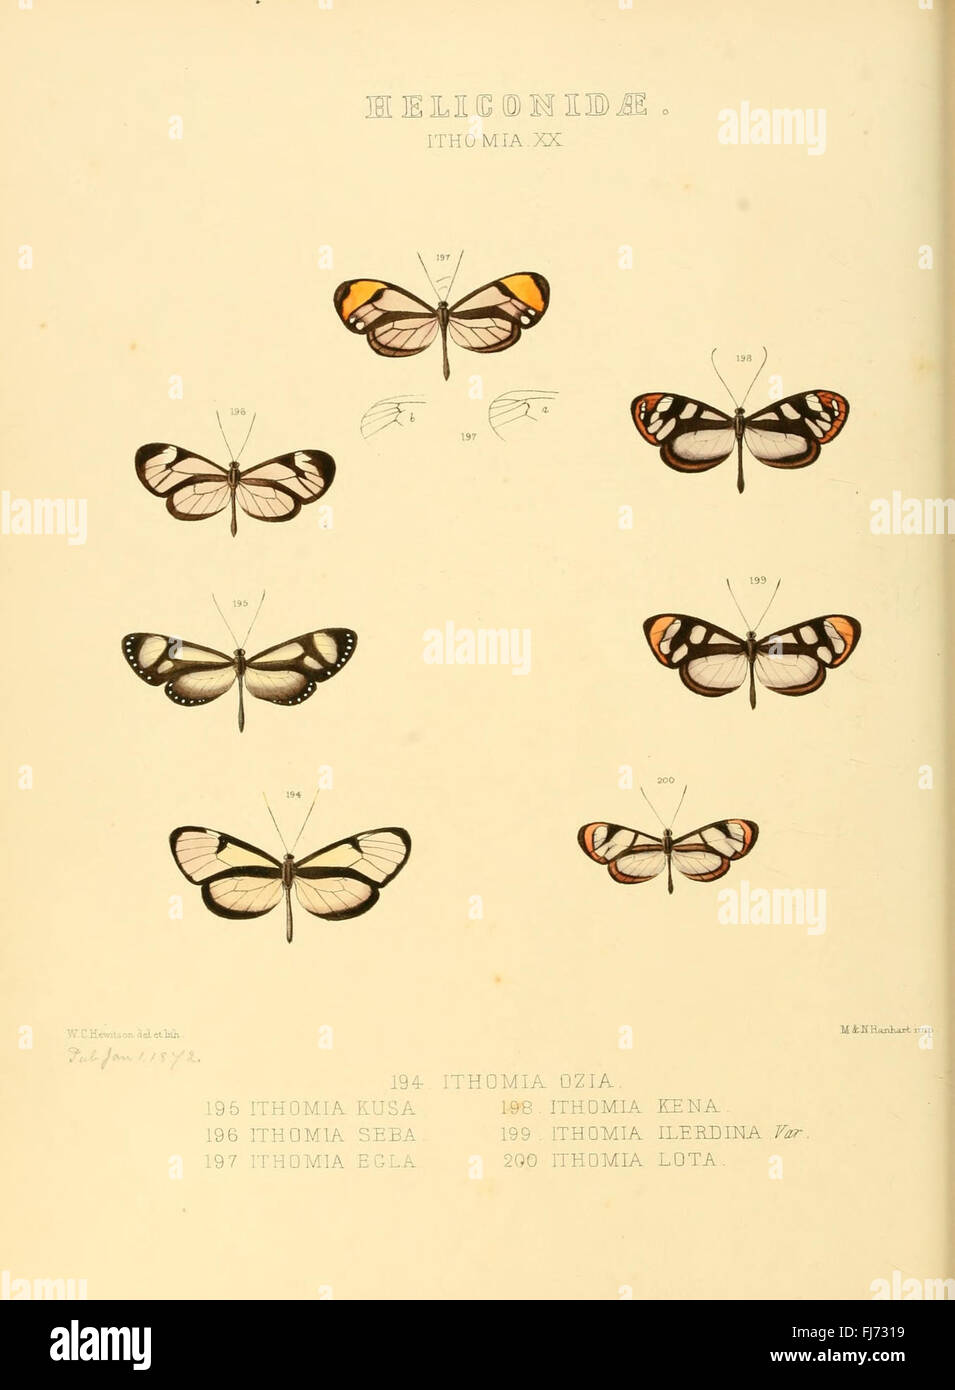 Illustrazioni di nuove specie di farfalle esotiche (Heliconidae- Ithomia) Foto Stock